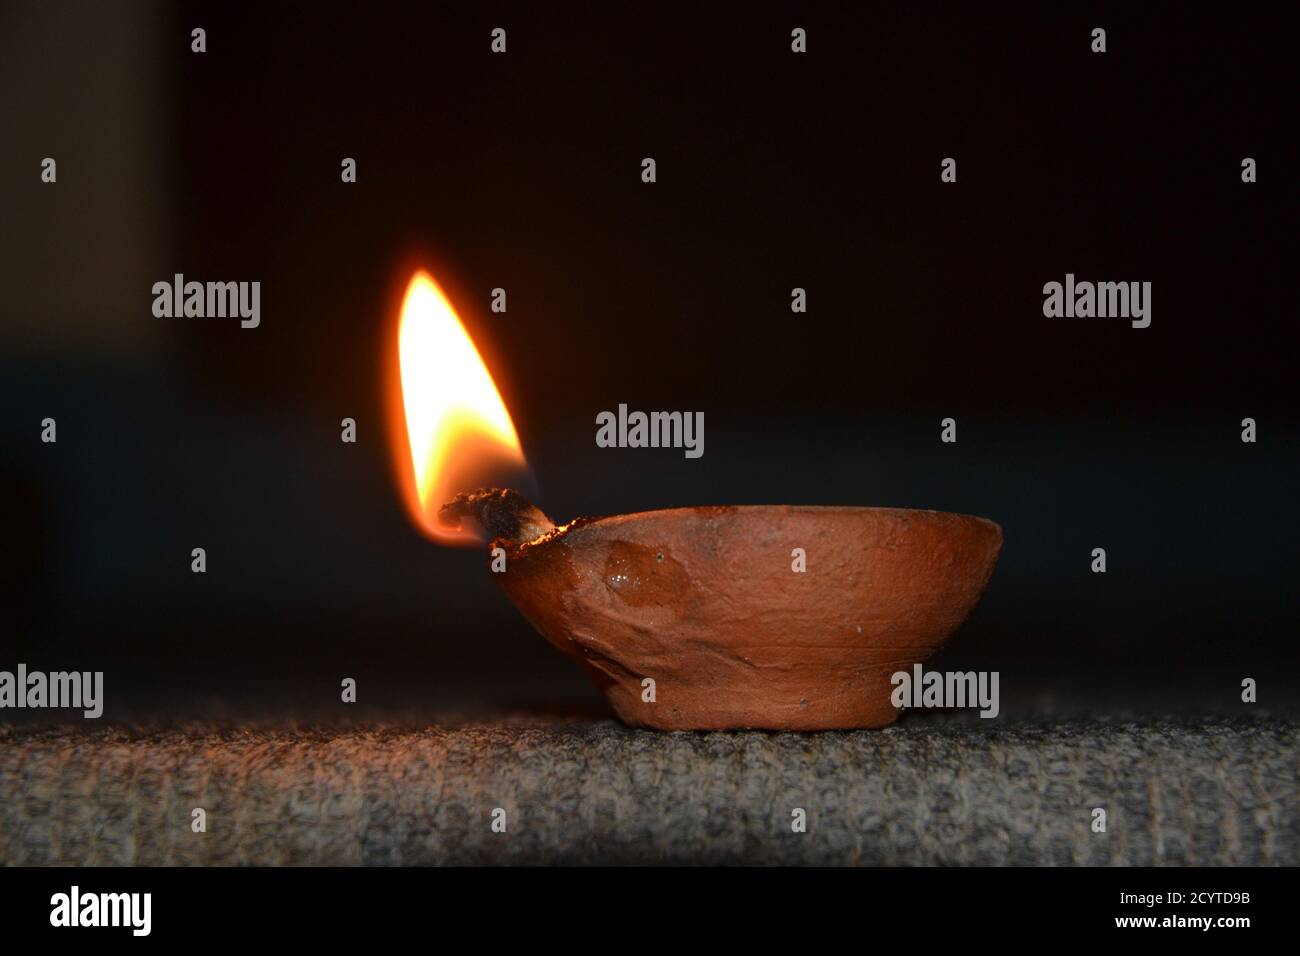 Öllampen mit Flamme. deepawali oder diwali wird von hindus durch das  Anzünden der Öllampen gefeiert Stockfotografie - Alamy